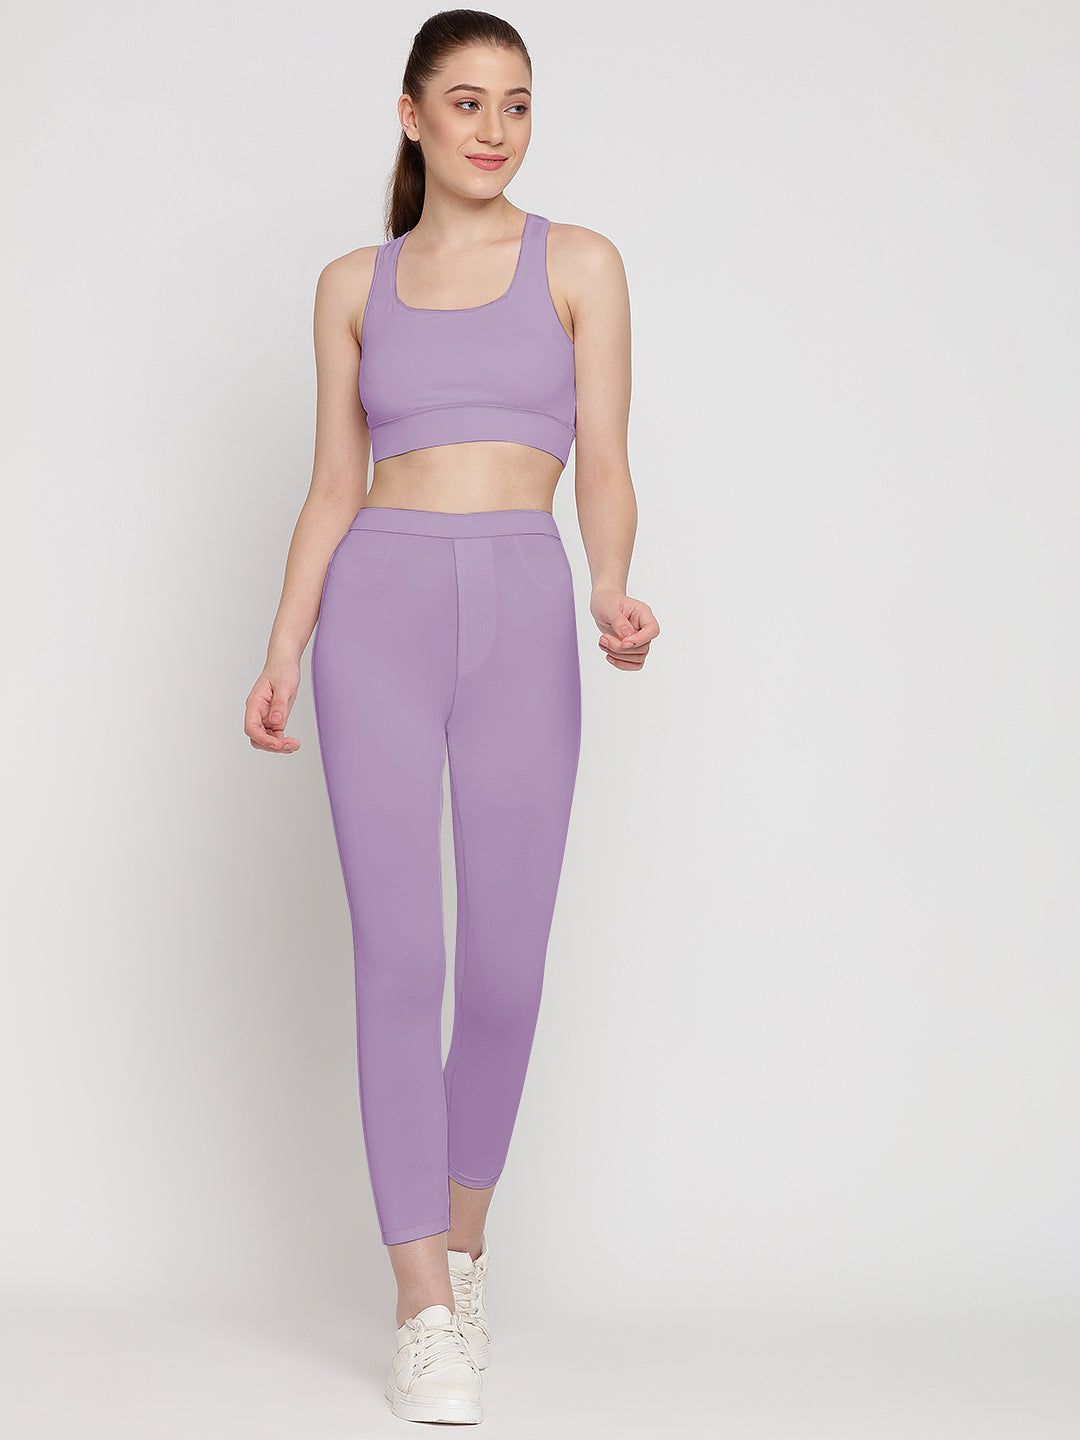 Flex Fit Pocket Tights 23” & Sports Bra Set - Miami Purple